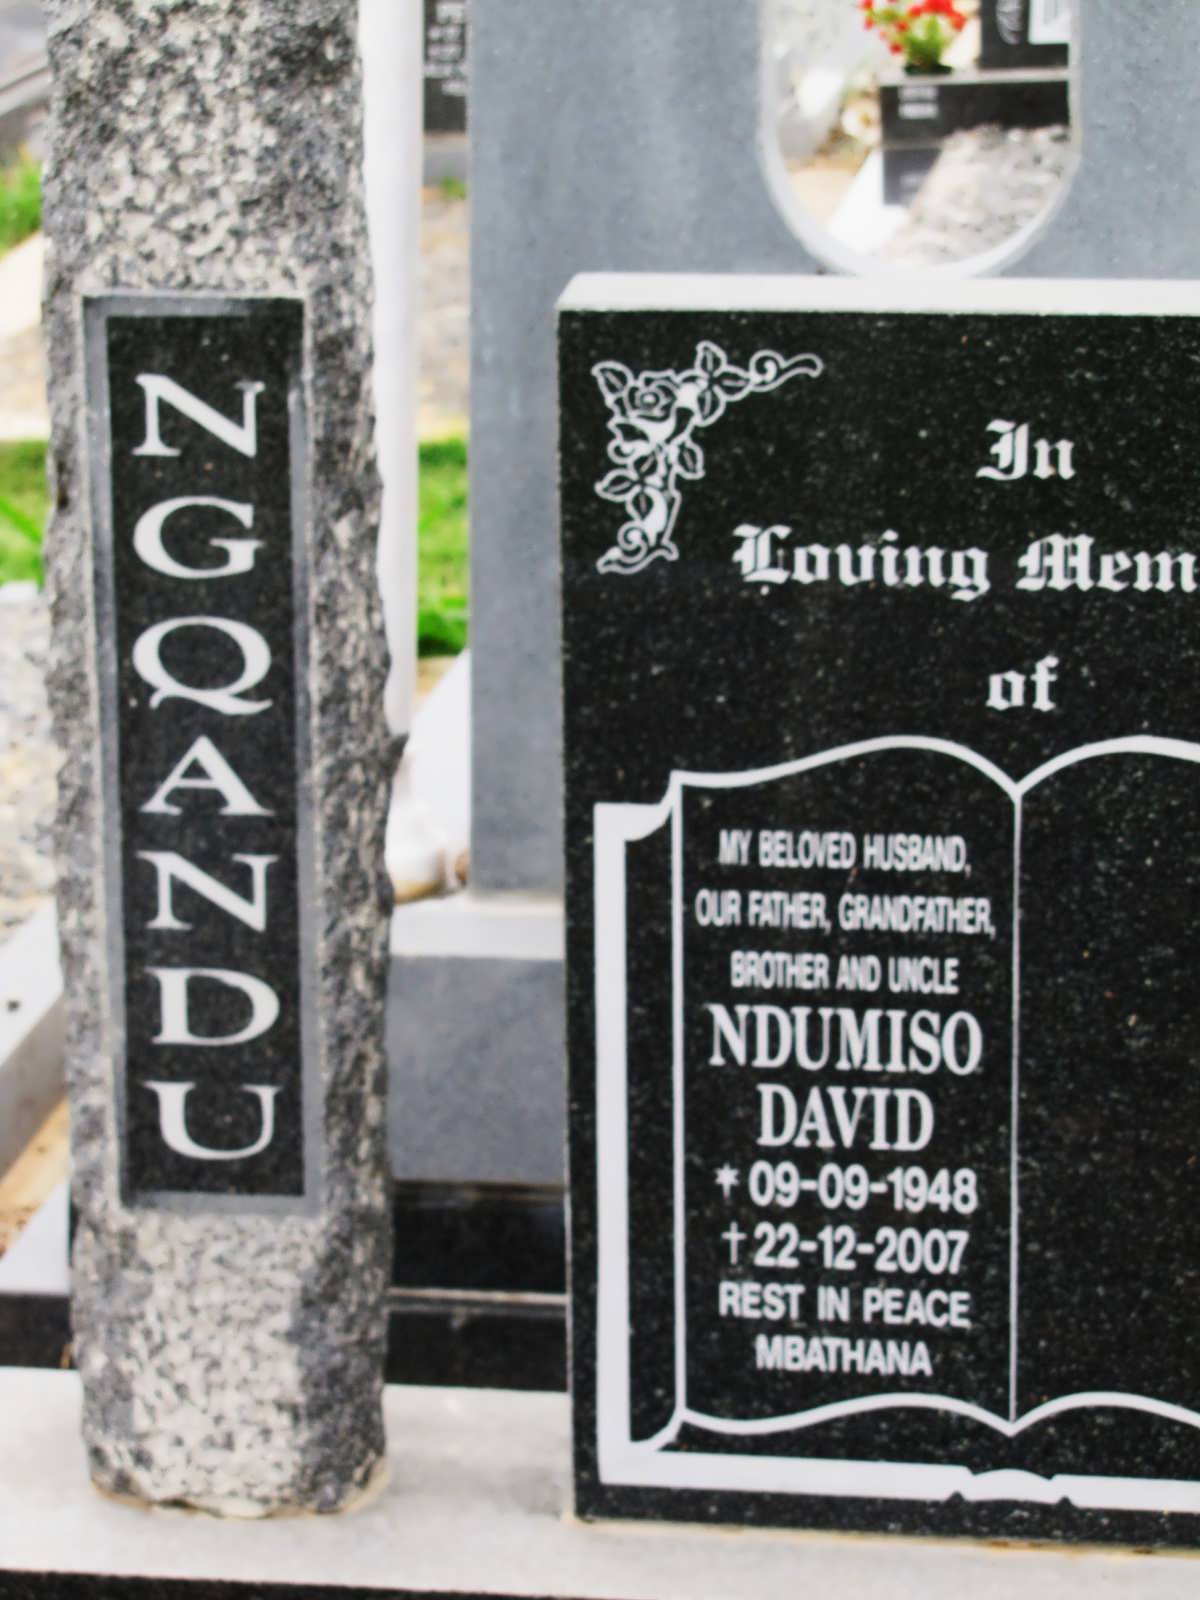 NGQANDU Ndumiso David 1948-2007